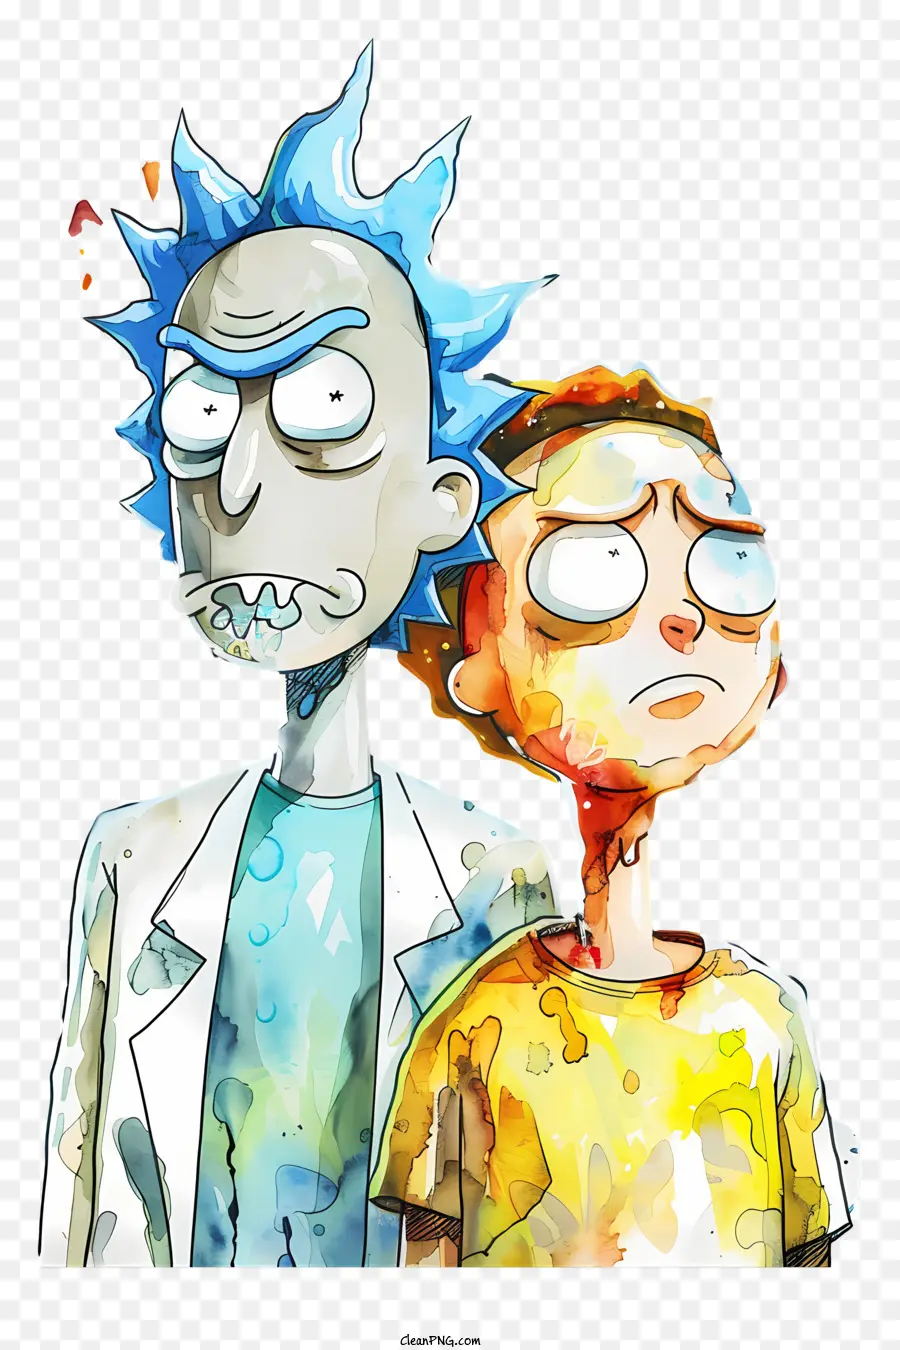 Rick và Morty - Hình ảnh hoạt hình của các nhà khoa học nghiêm túc trong áo khoác phòng thí nghiệm